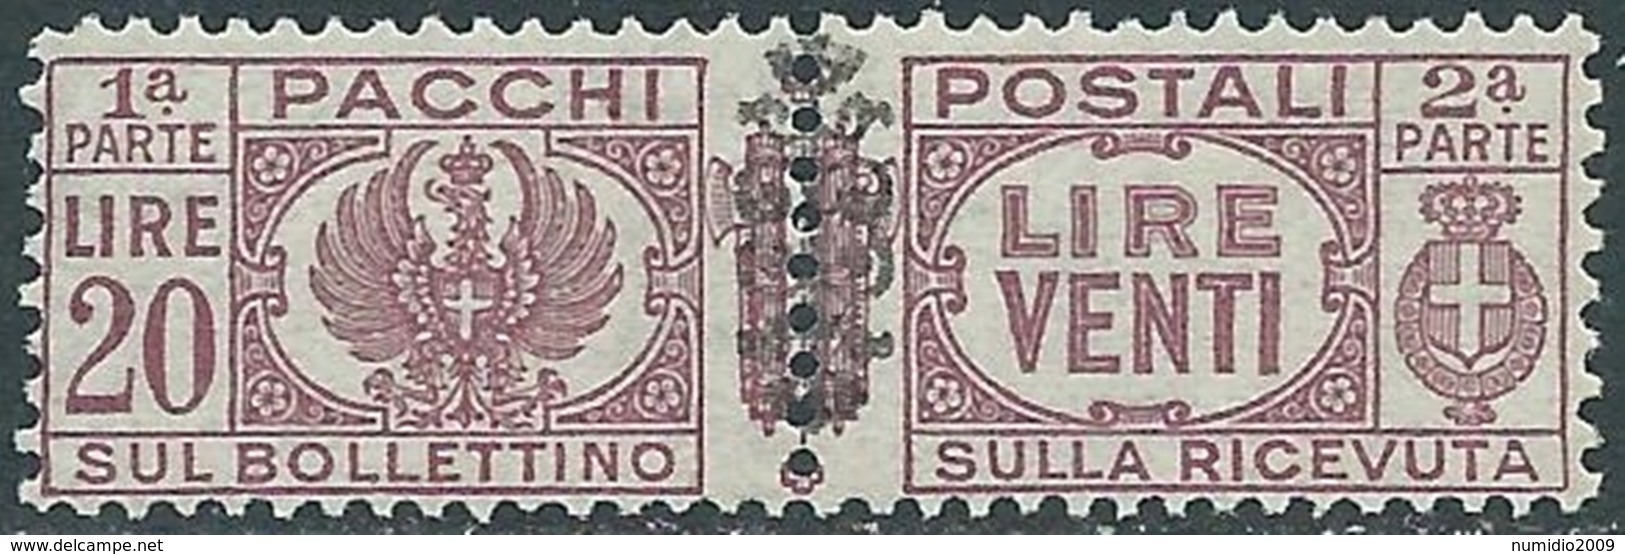 1945 LUOGOTENENZA PACCHI POSTALI 20 LIRE MNH ** - RB14-6 - Paketmarken